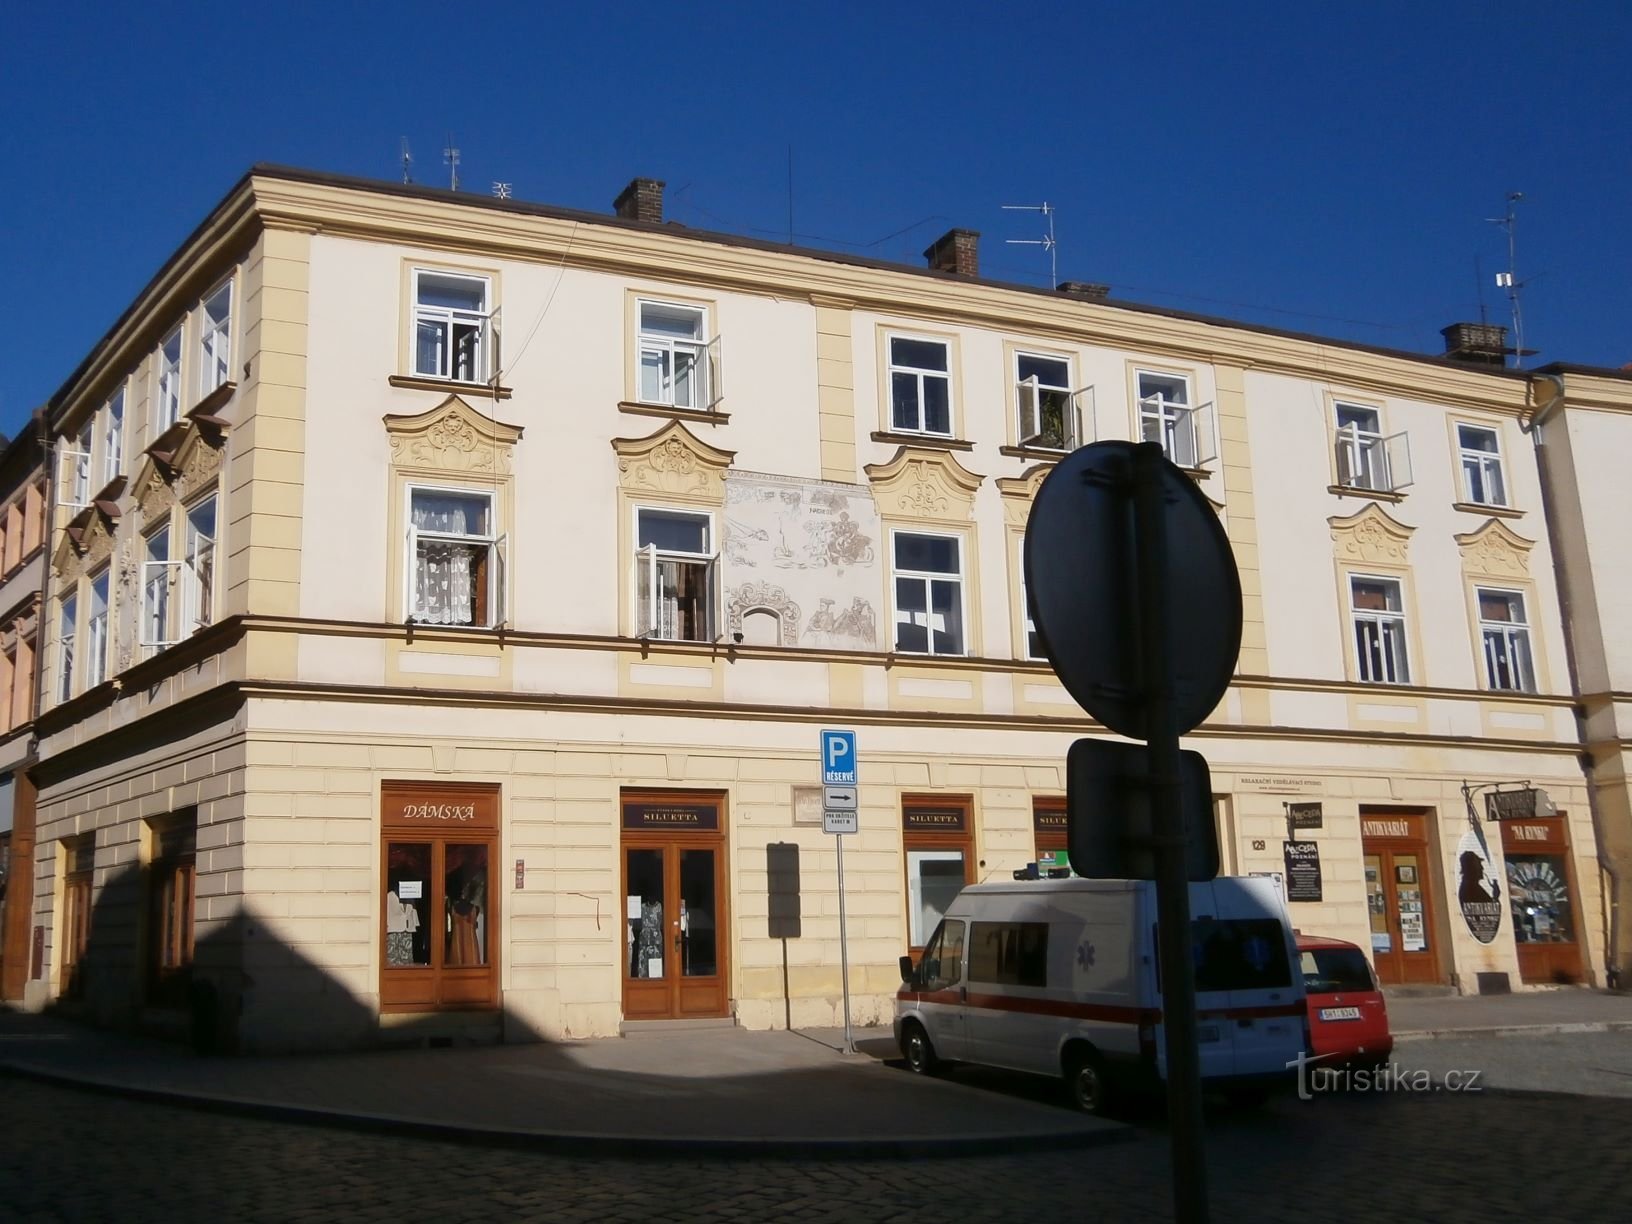 Malé náměstí n.129 (Hradec Králové, 2.8.2013 aprile XNUMX)